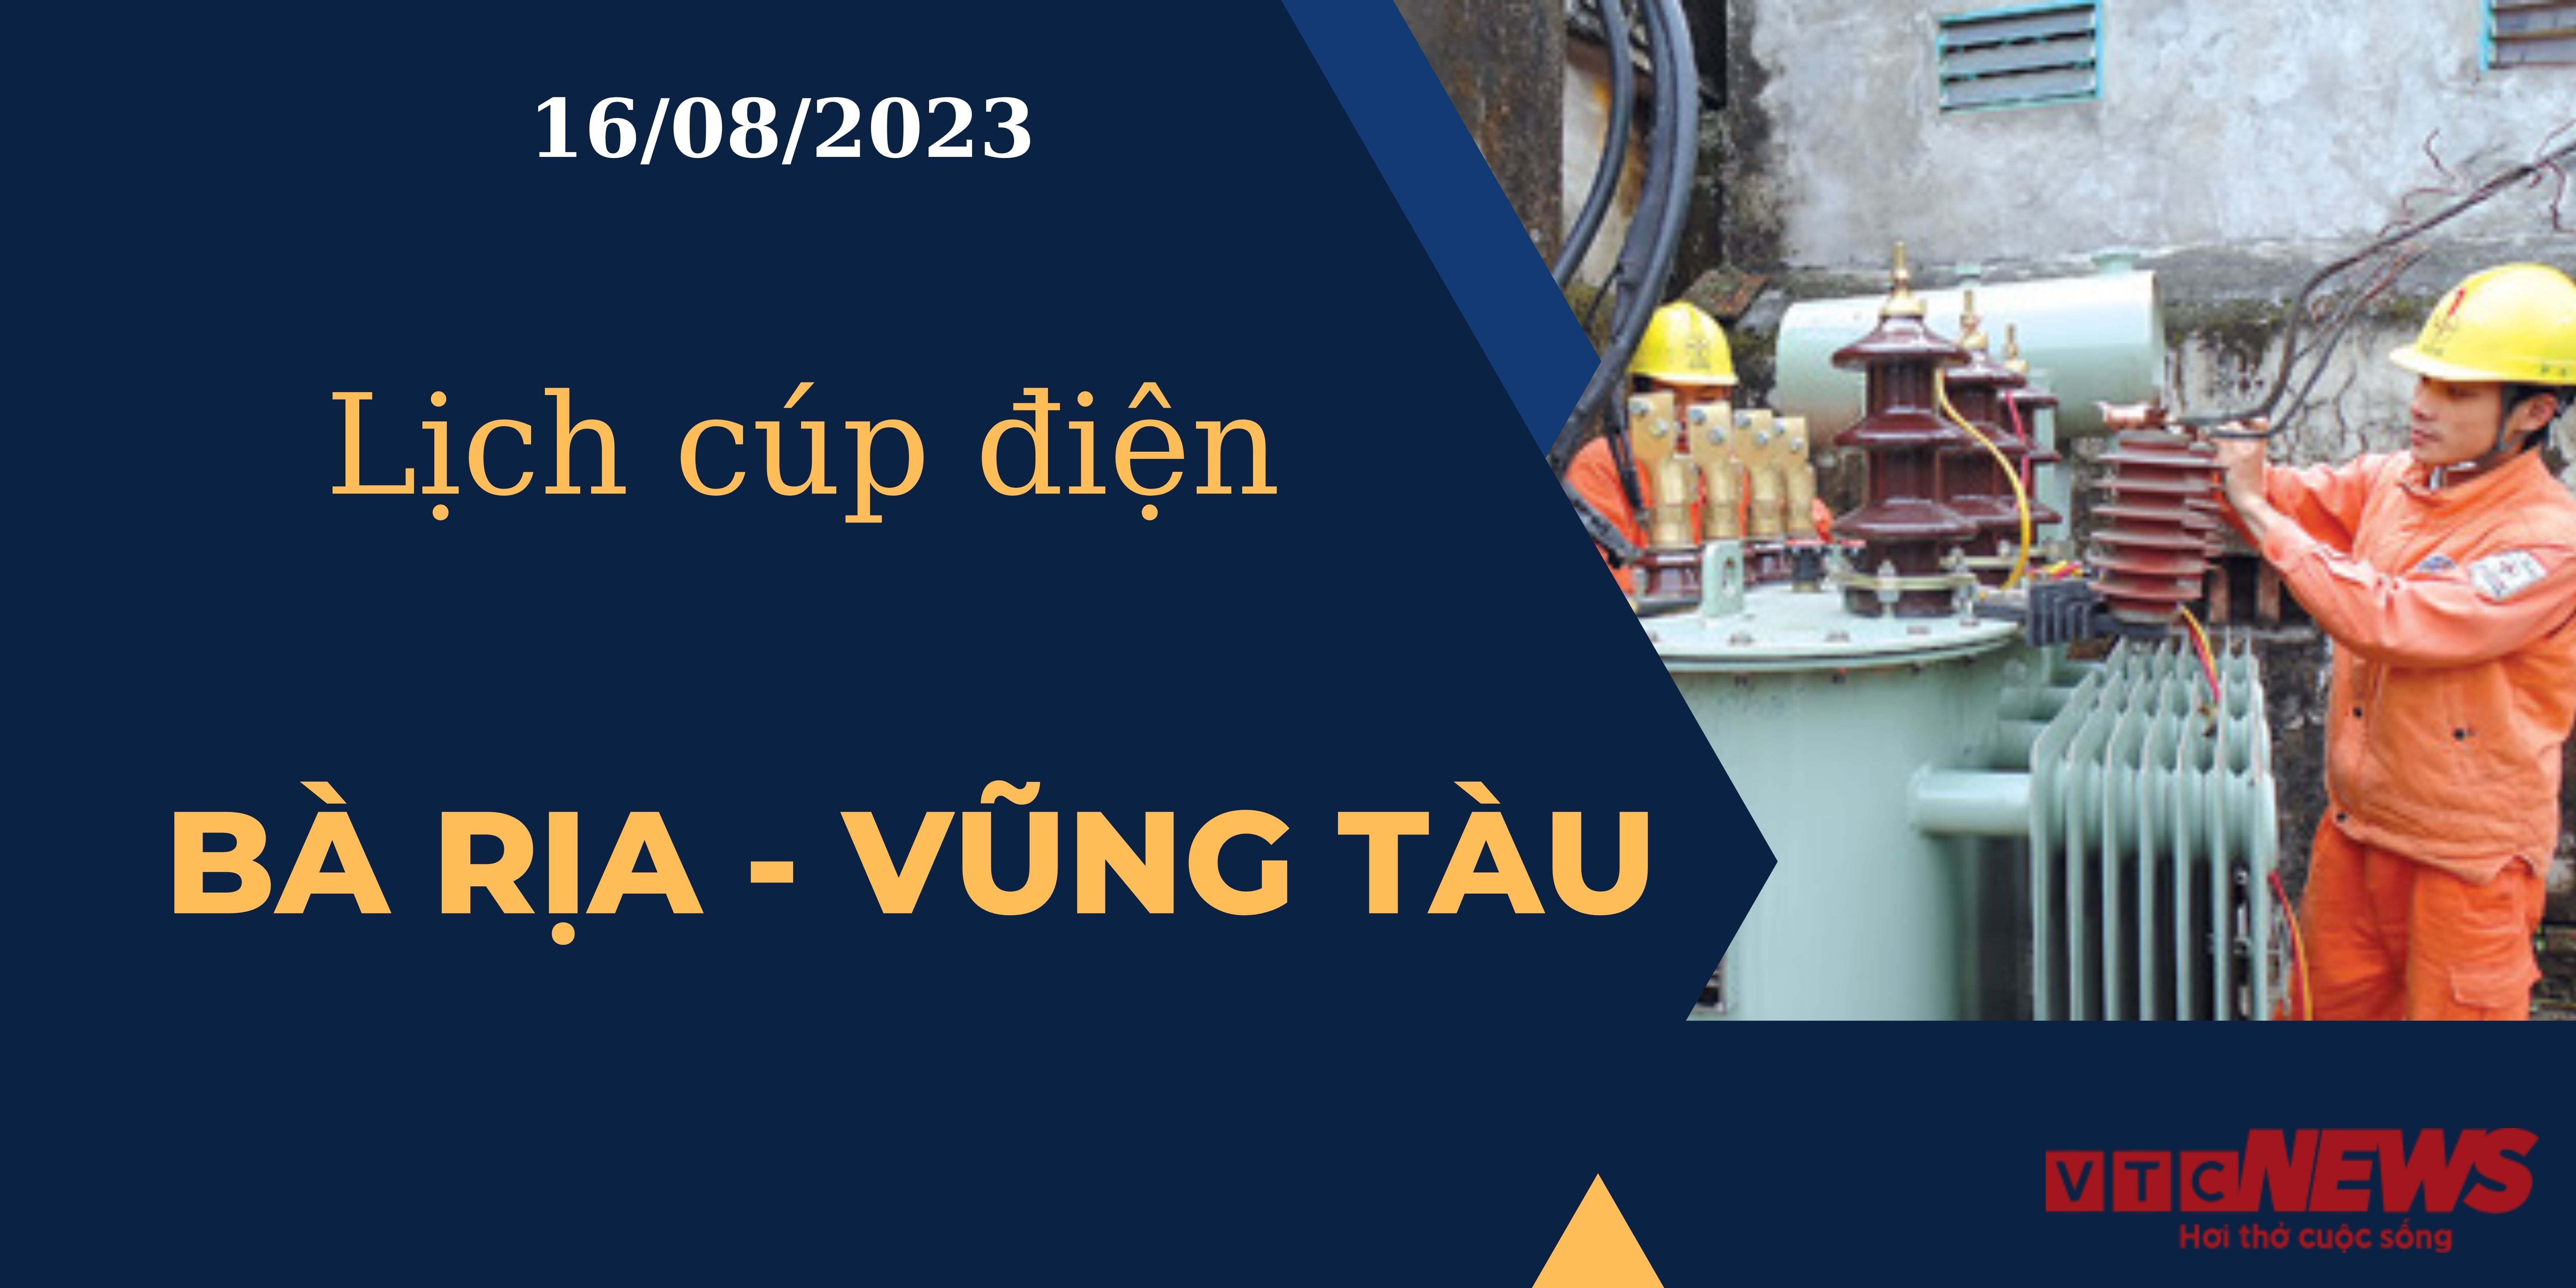 Lịch cúp điện hôm nay ngày 16/08/2023 tại Bà Rịa - Vũng Tàu